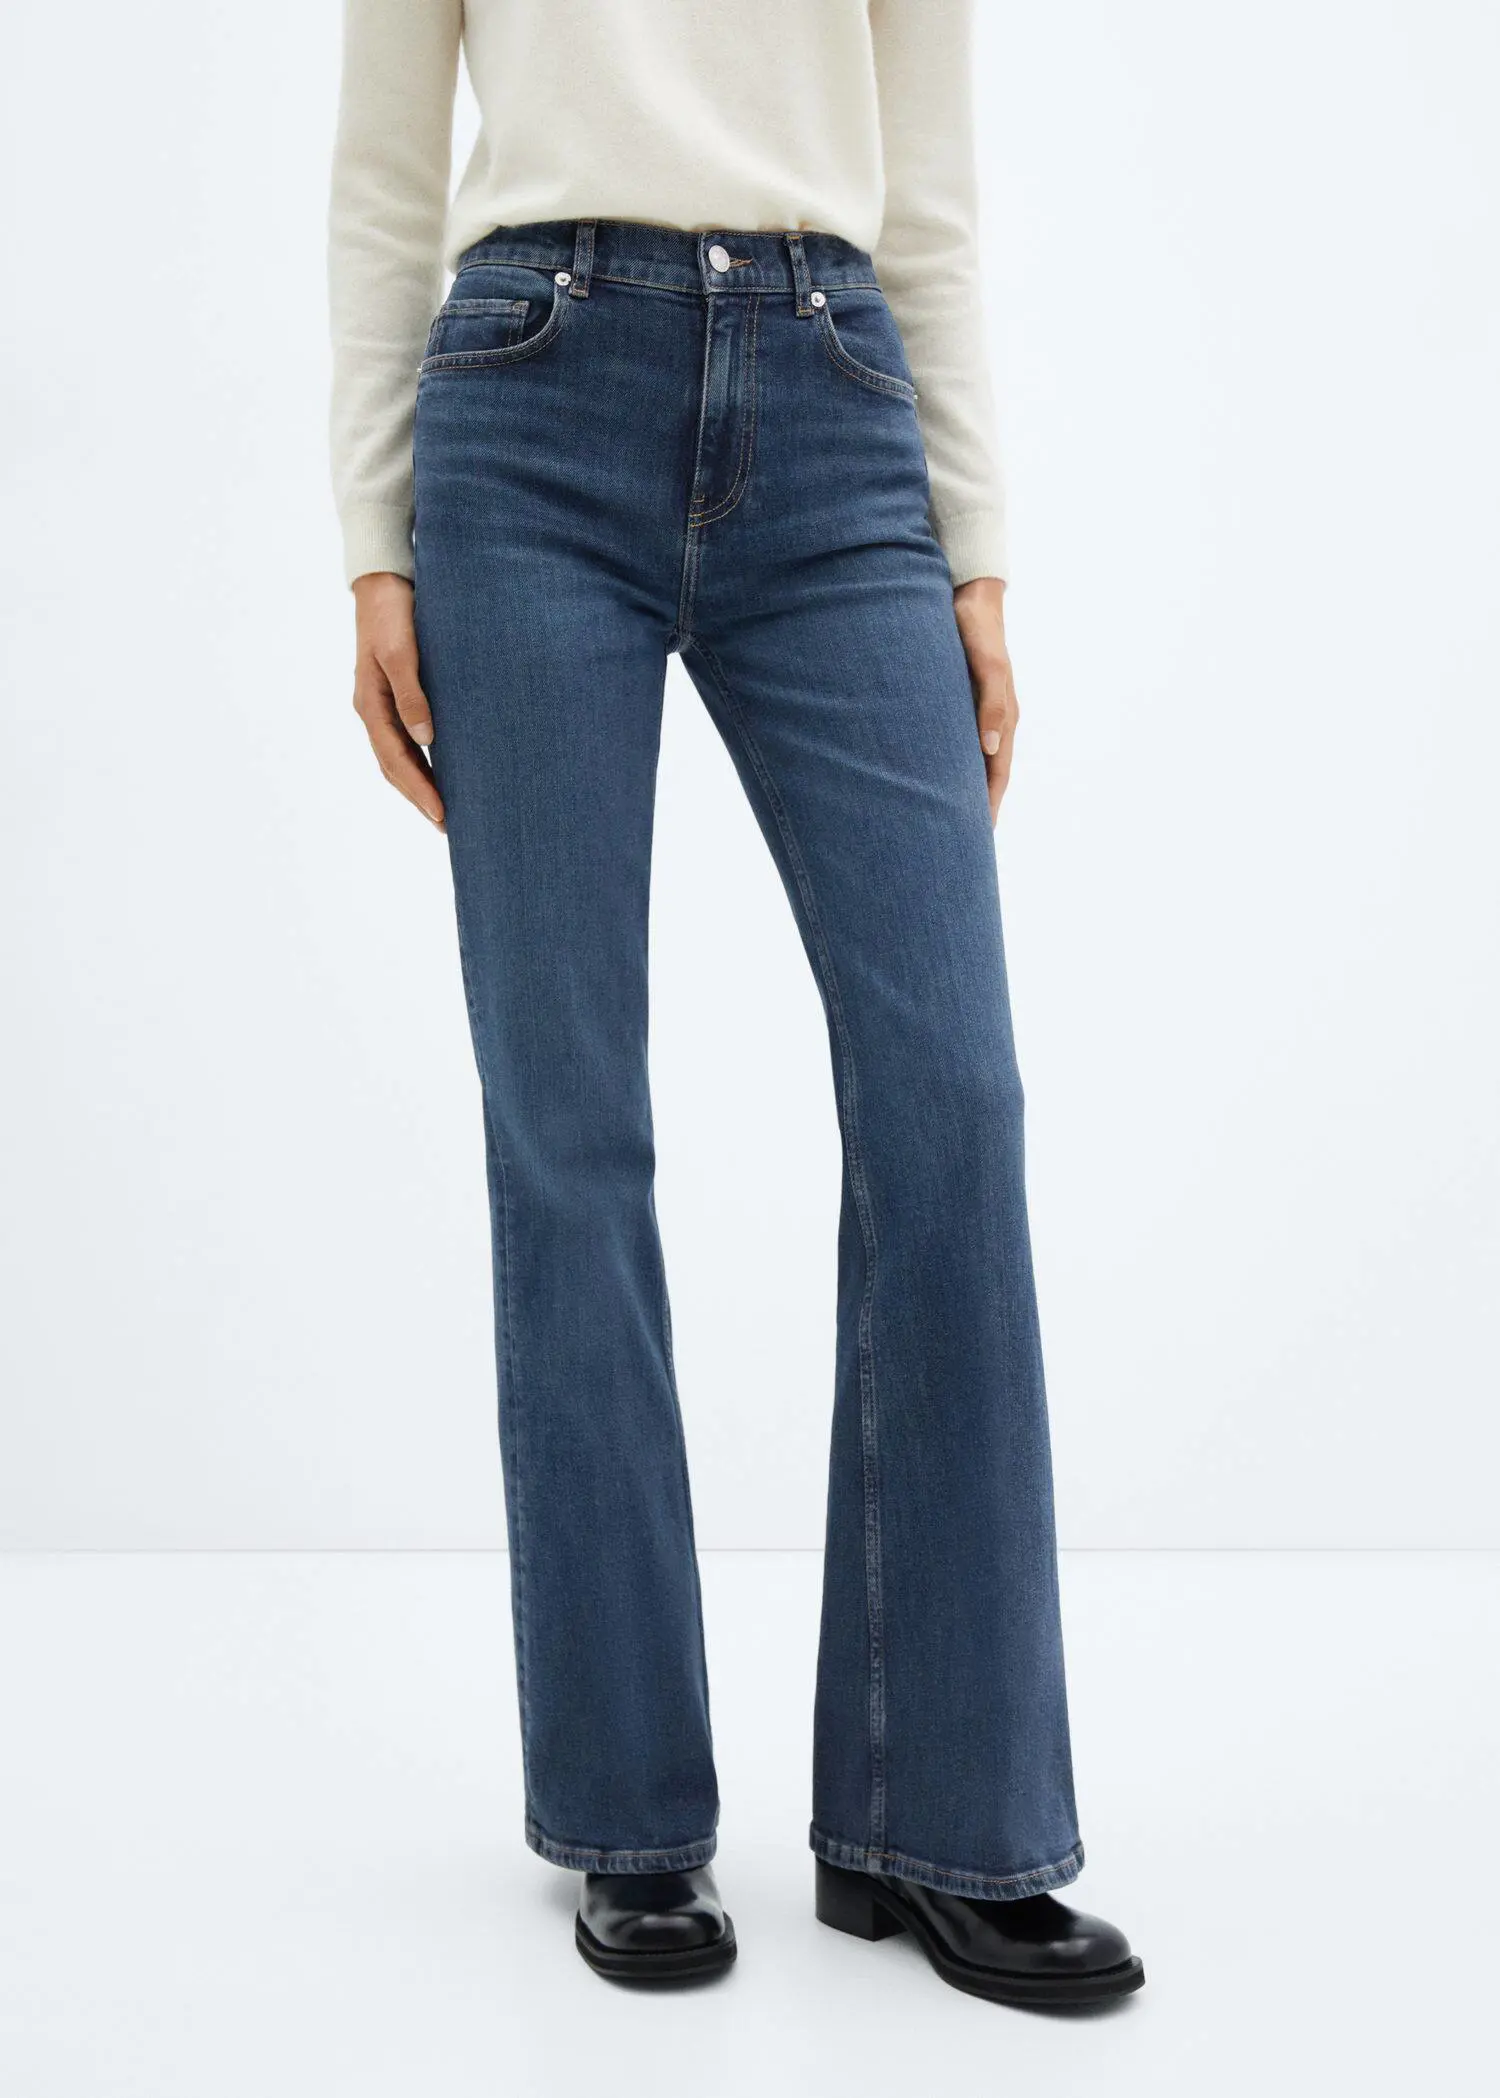 Mango Flared-Jeans mit mittlerer Bundhöhe. 1